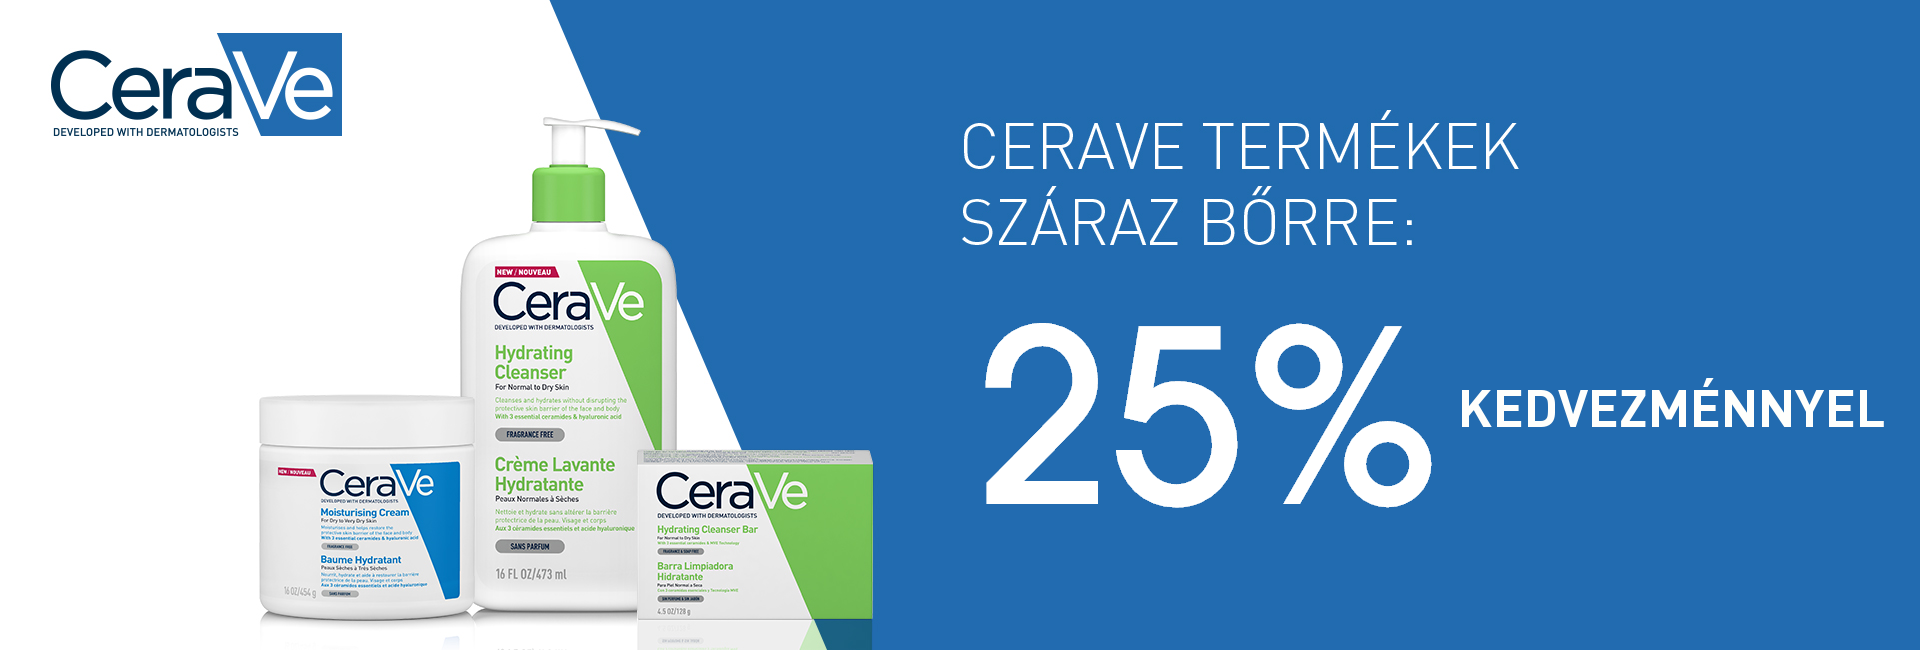 2020. június 8-15. között minden CeraVe terméket 25% kedvezménnyel kínálunk! 